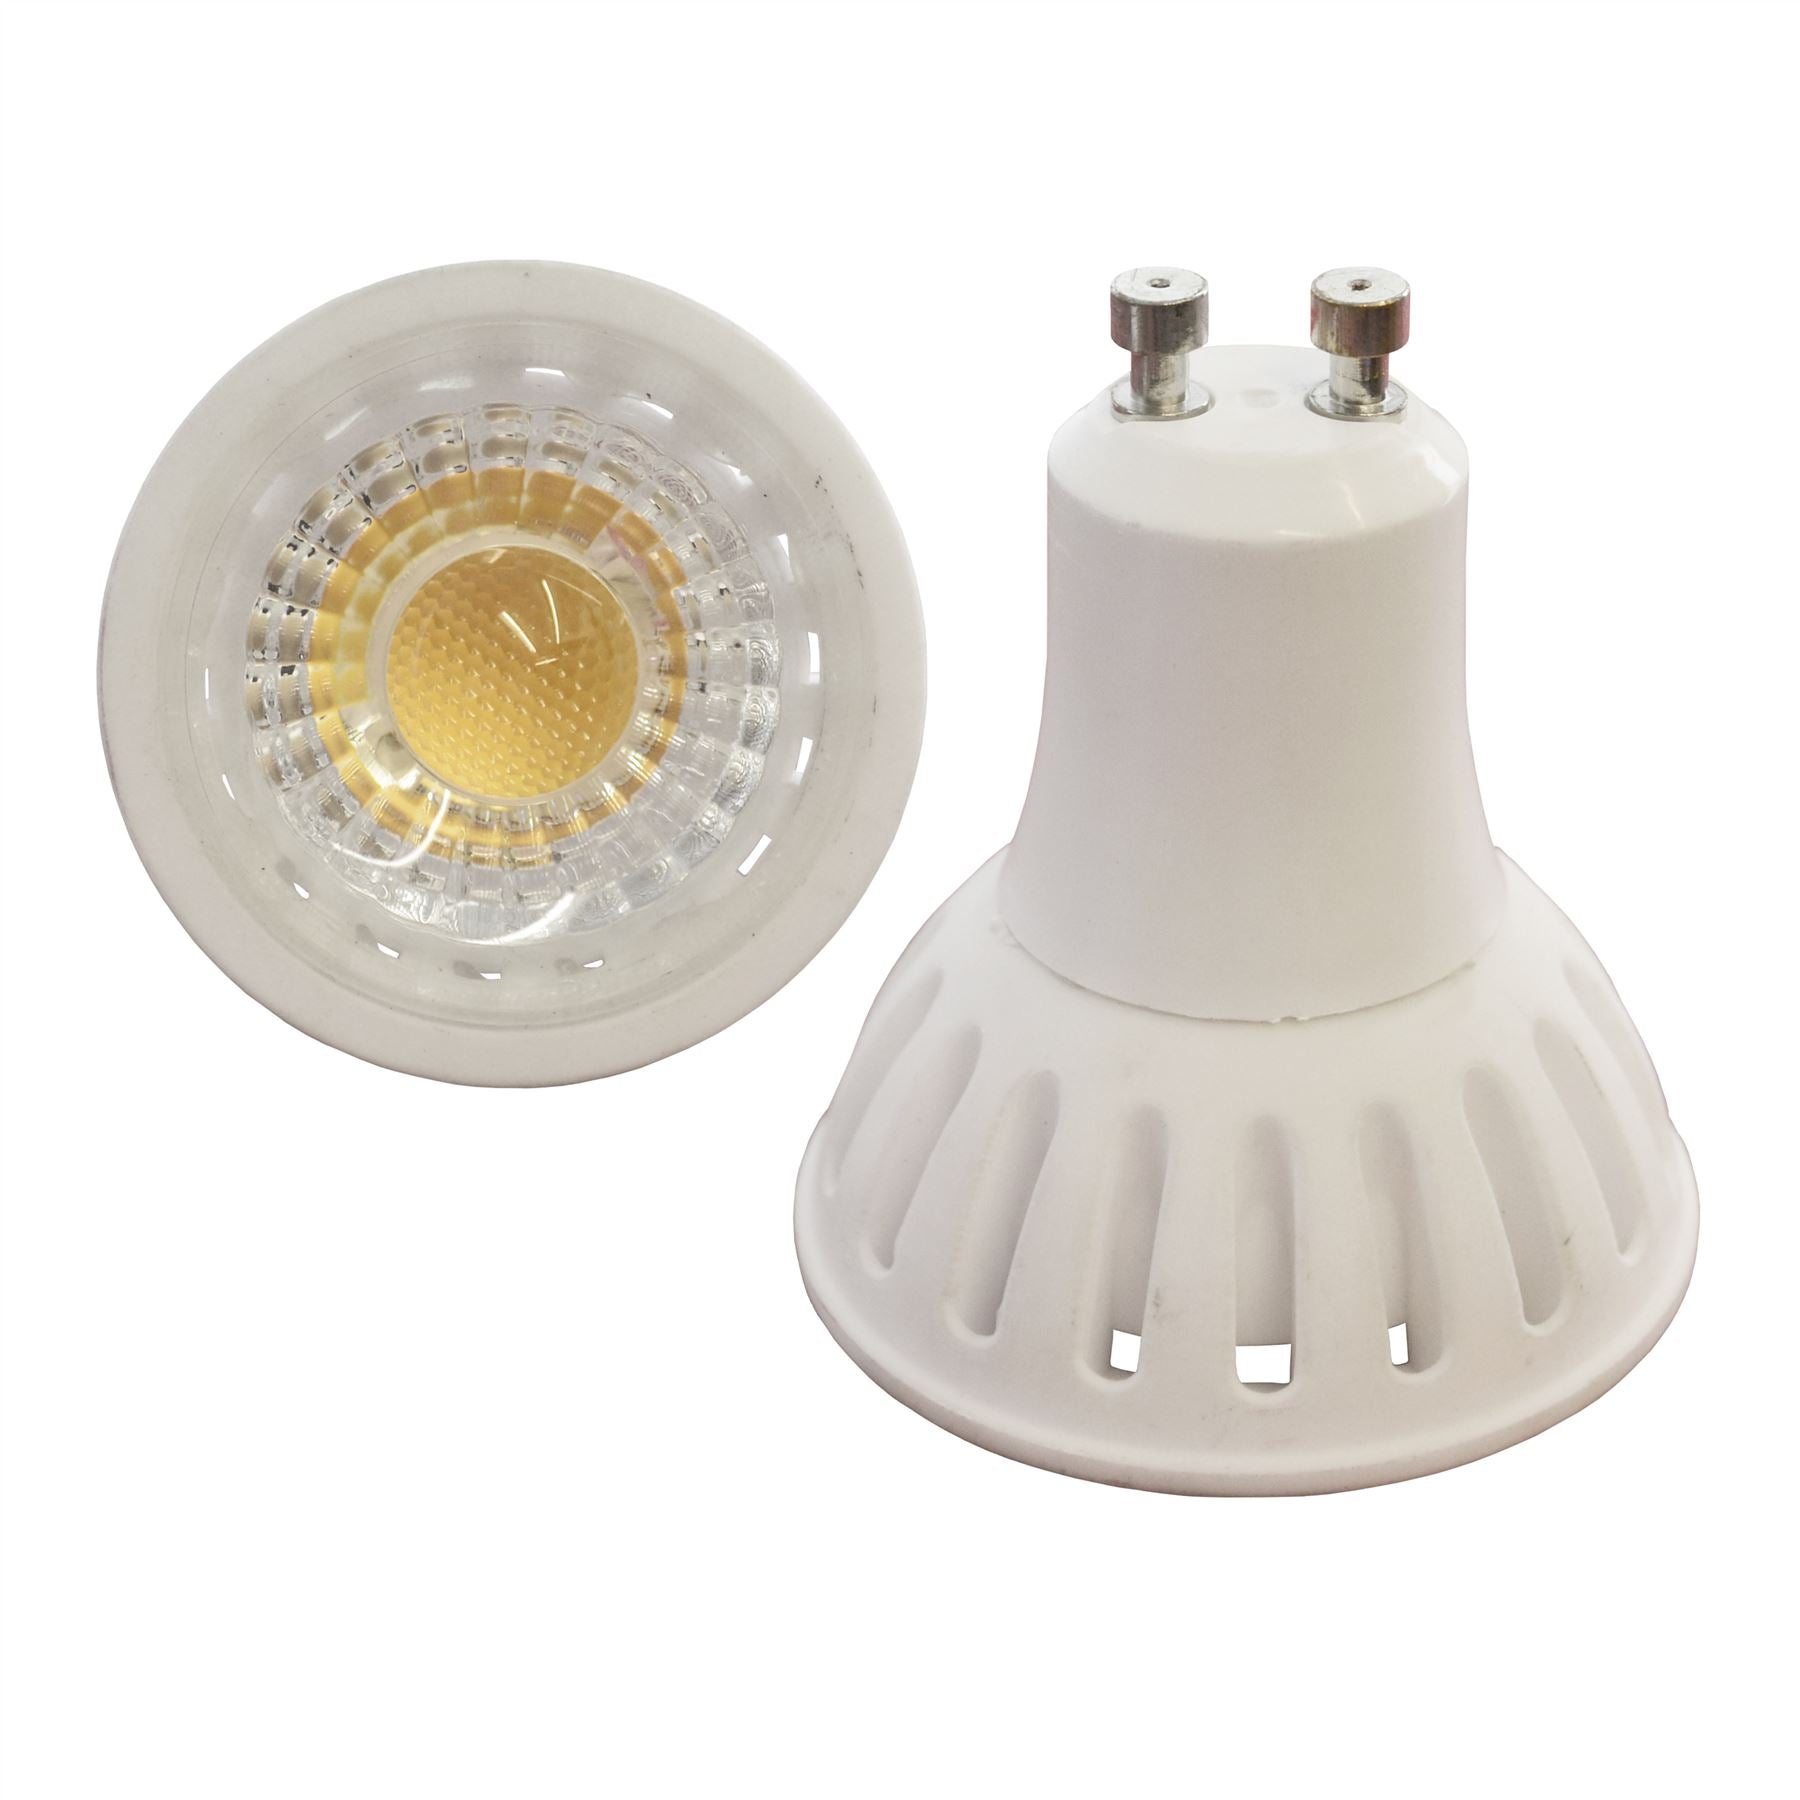 LED Bulb GU10 Spot Light Dimmable 6w 450 Lumen 4000k Cool White Energy Saver E09